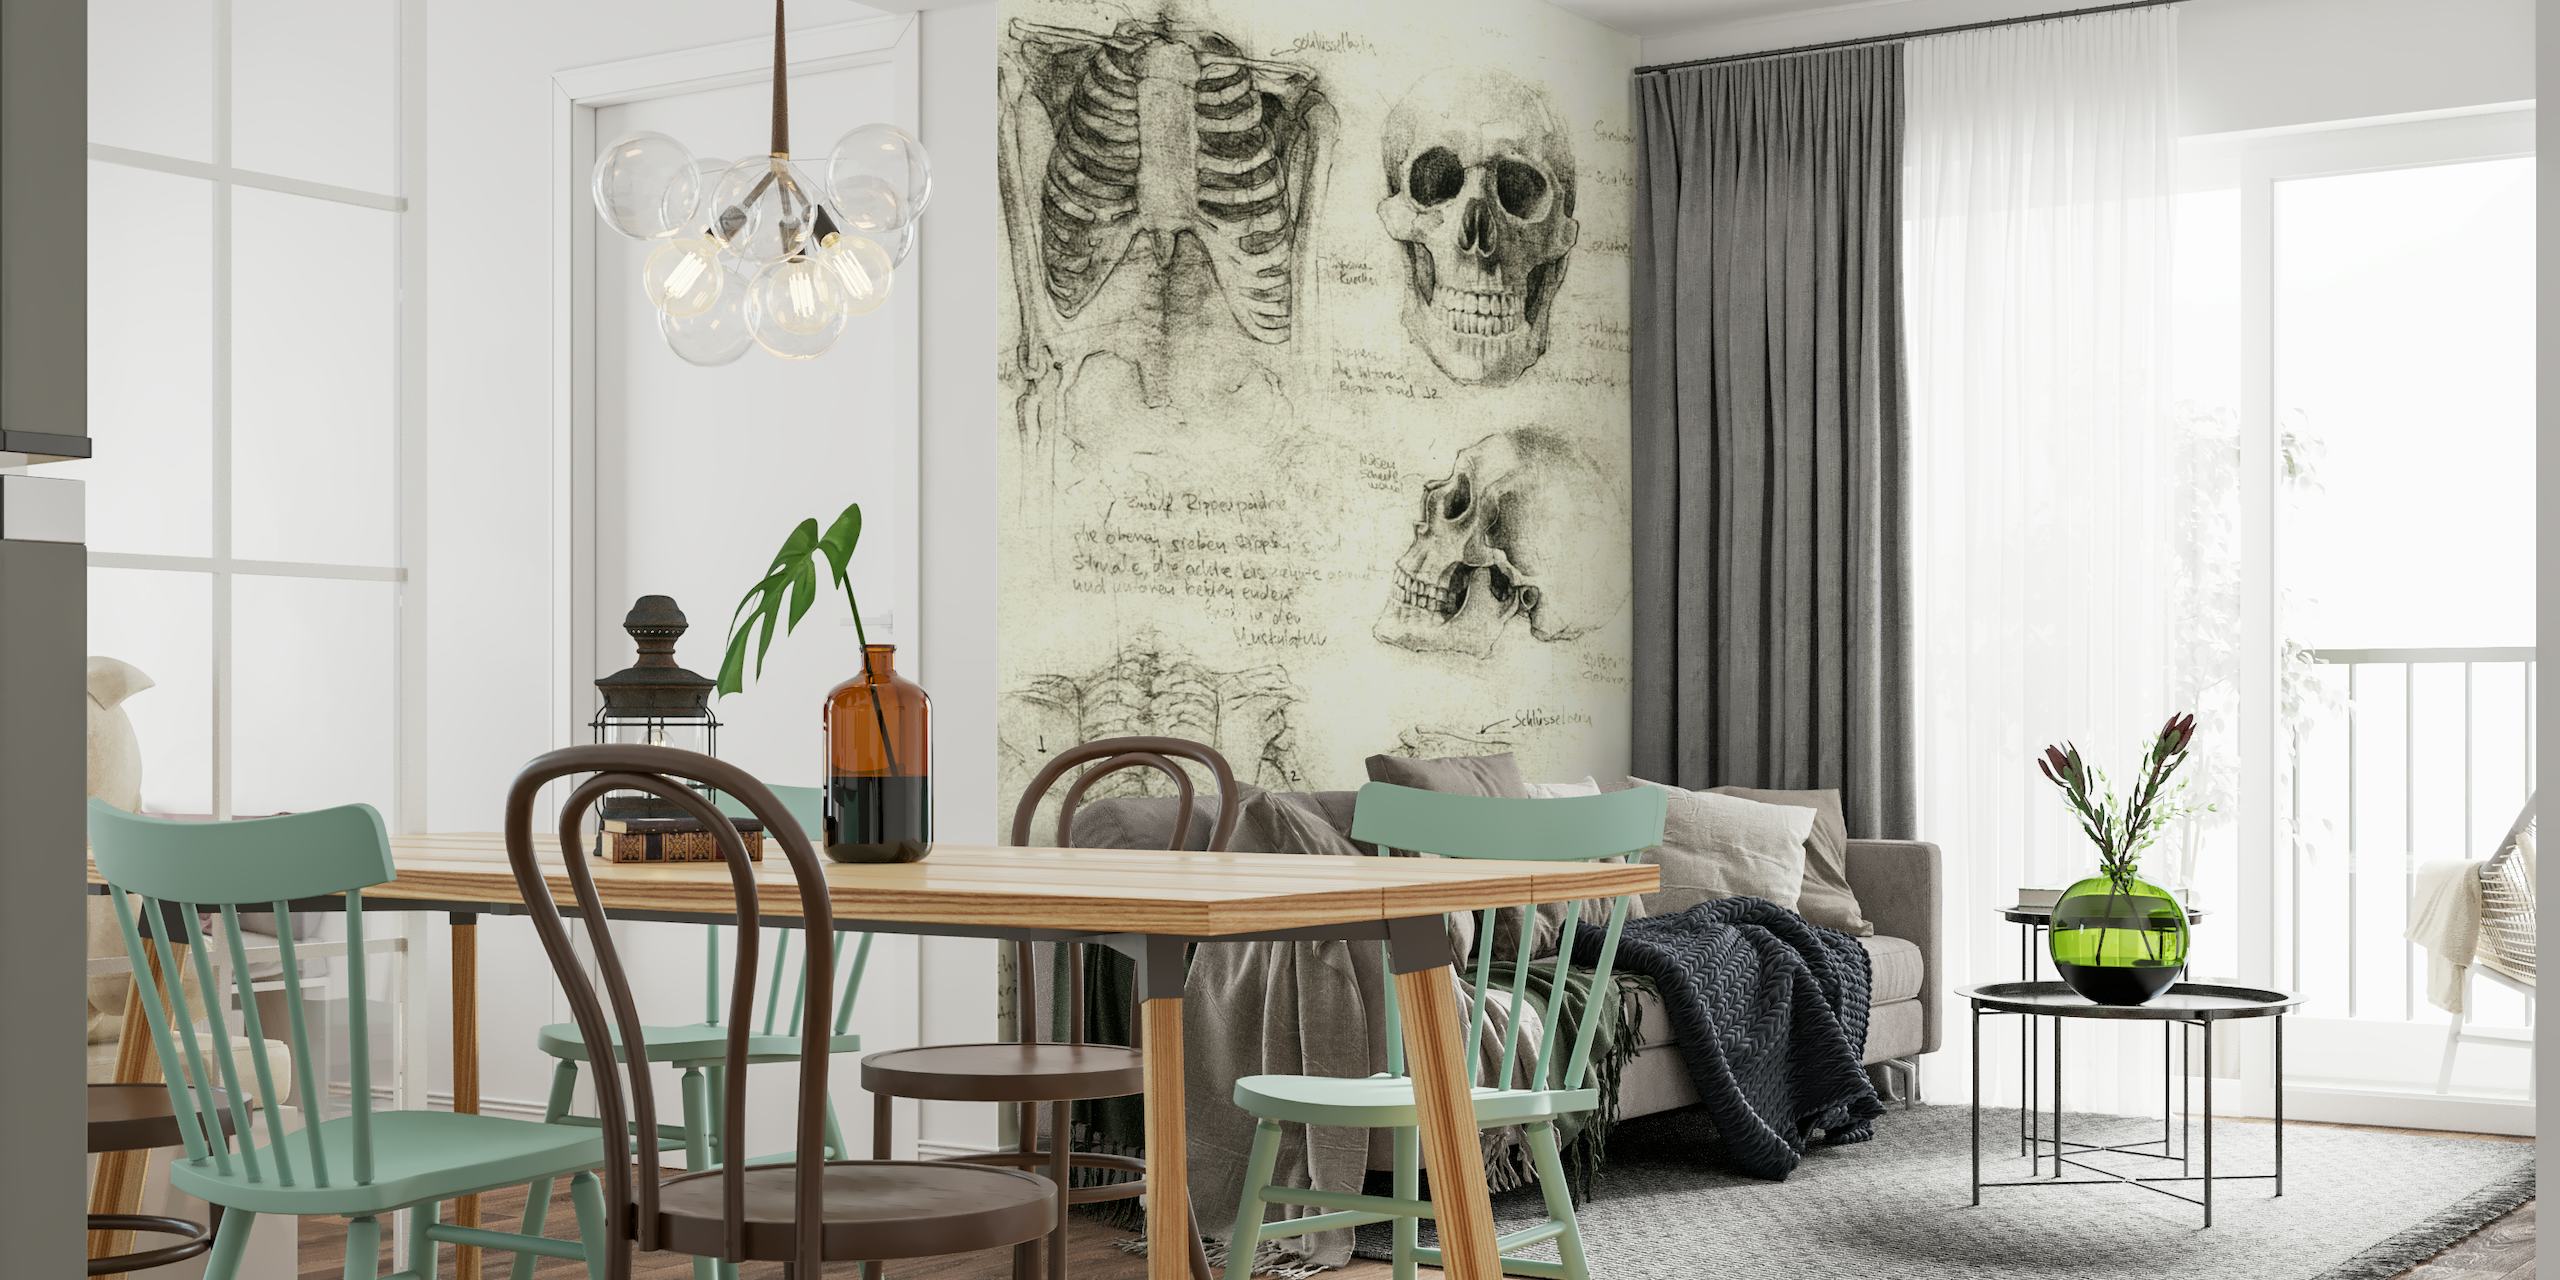 Mural de pared con bocetos de esqueletos anatómicos con dibujos detallados de cráneos y huesos humanos